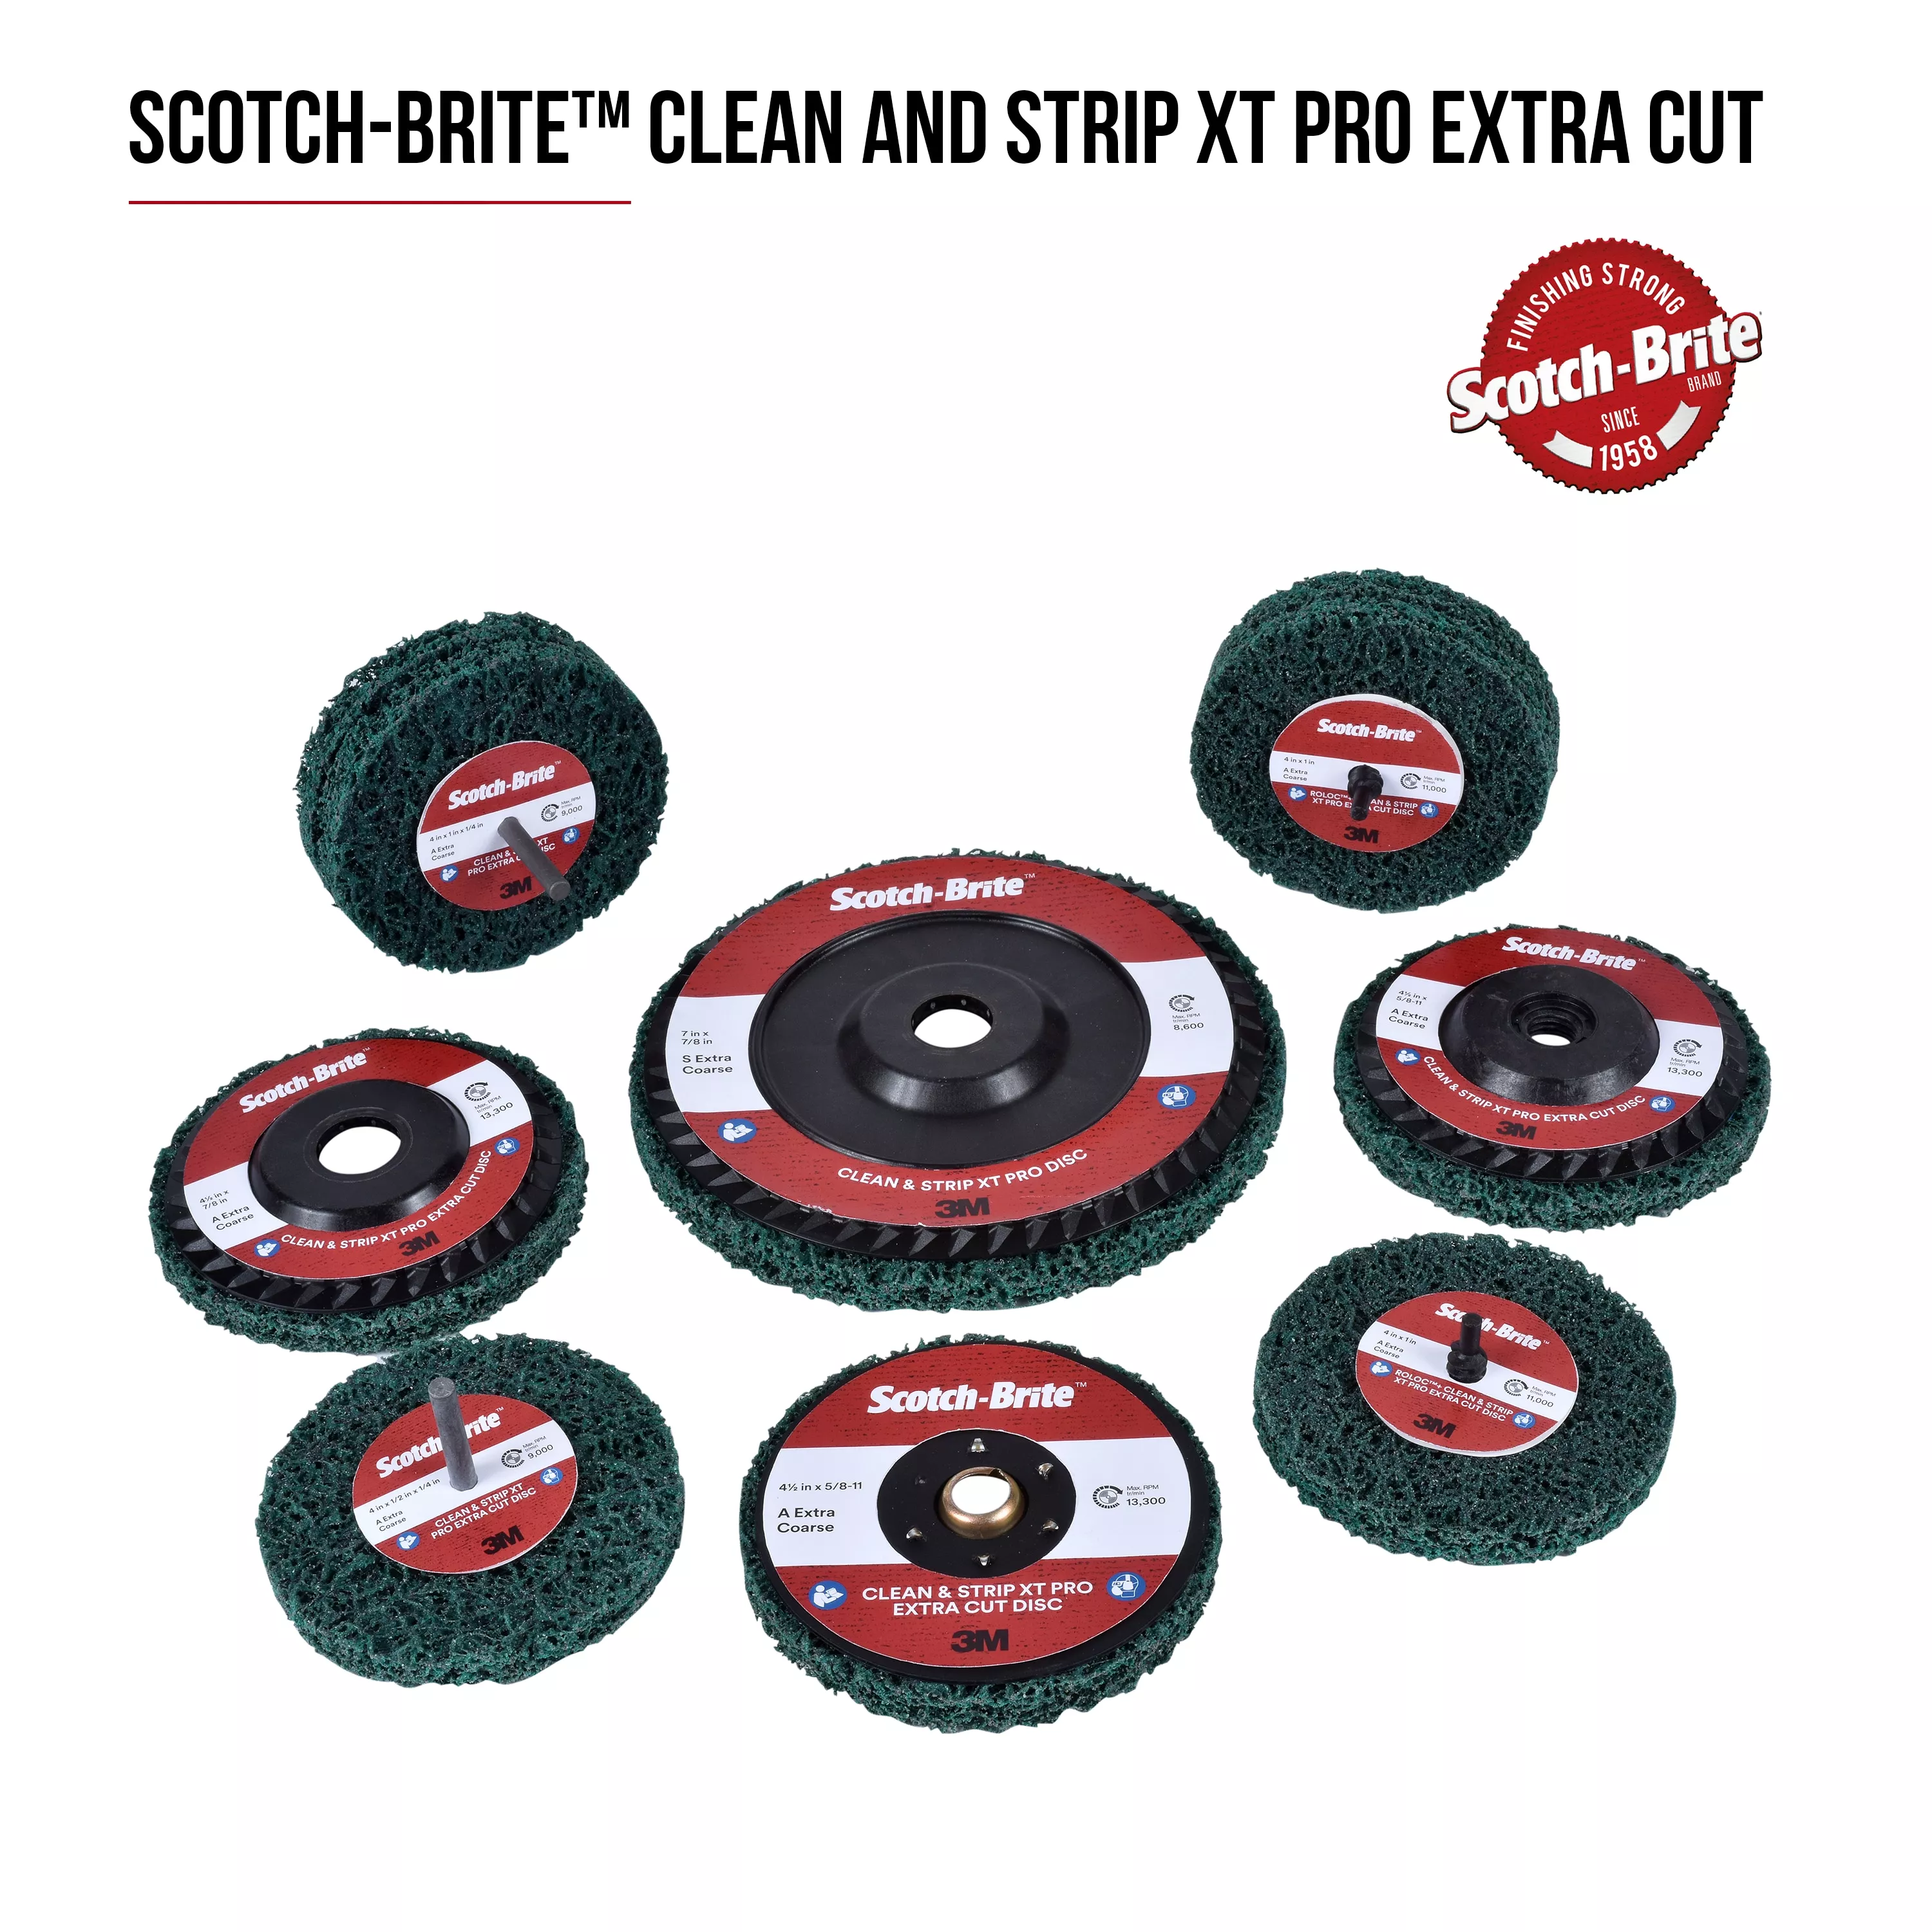 SKU 7100175493 | Scotch-Brite™ Clean and Strip XT Pro Extra Cut Disc